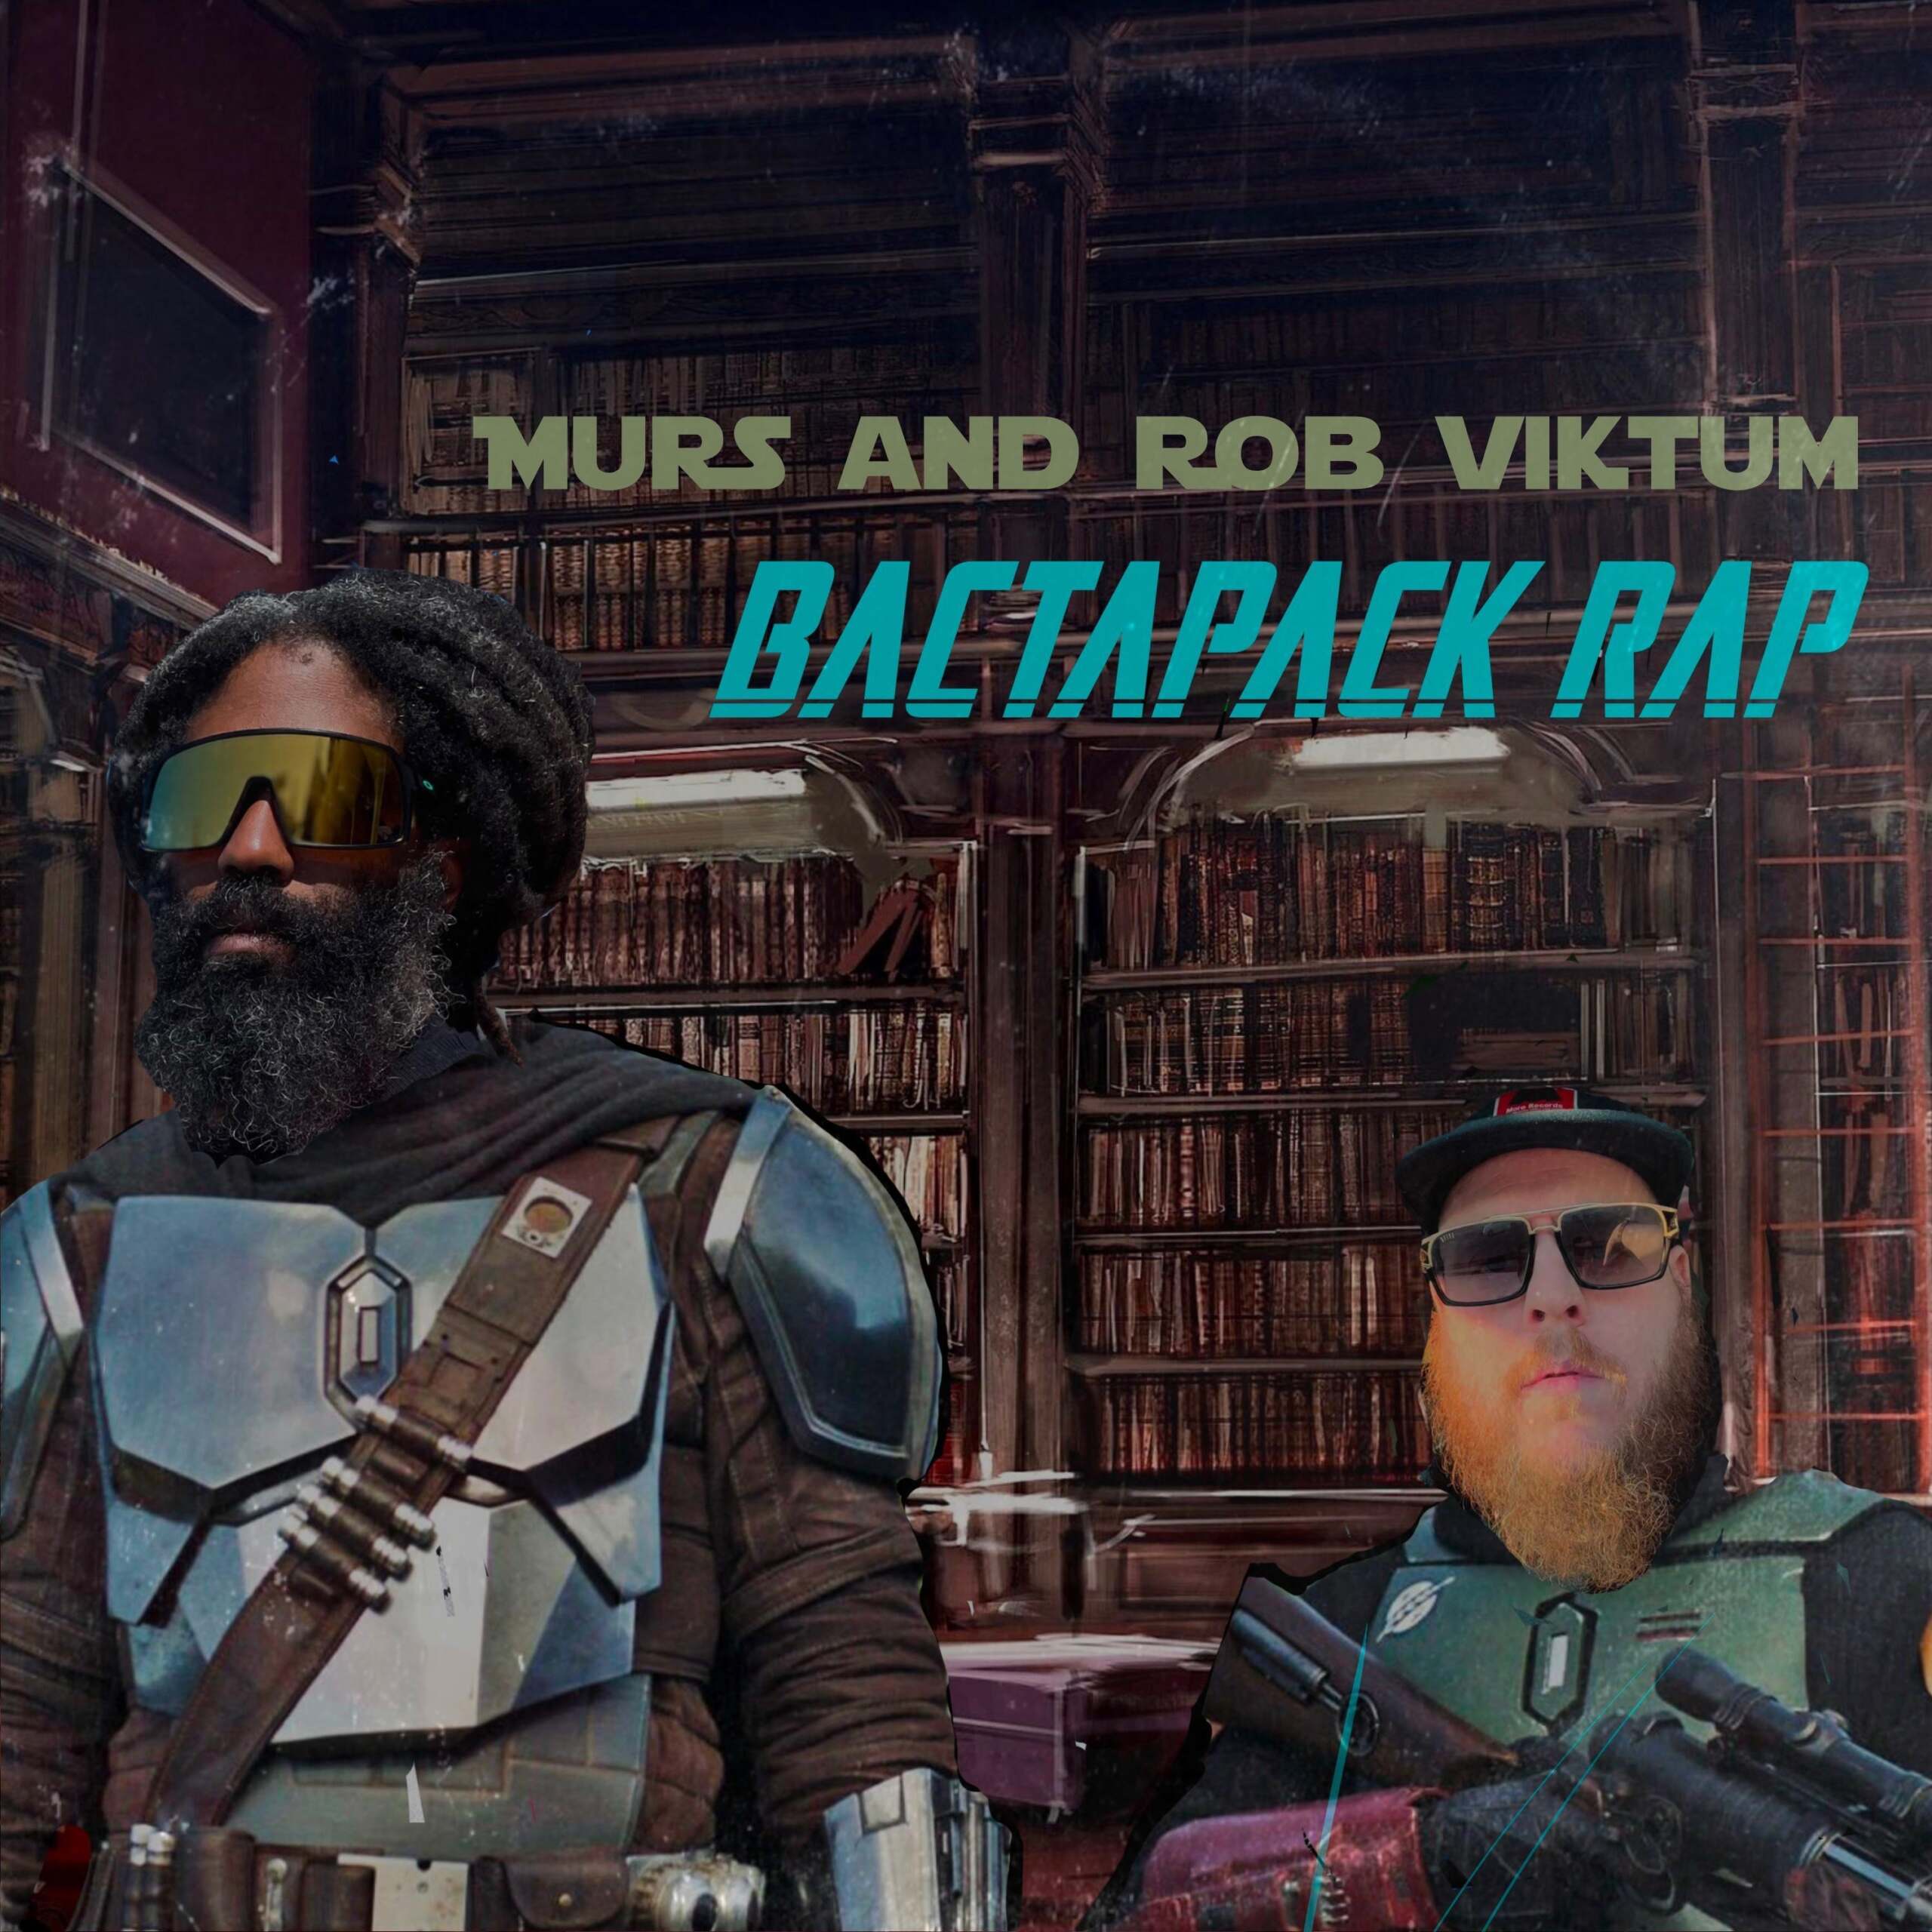 Murs & Rob Viktum "Bactapack Rap" (Audio)